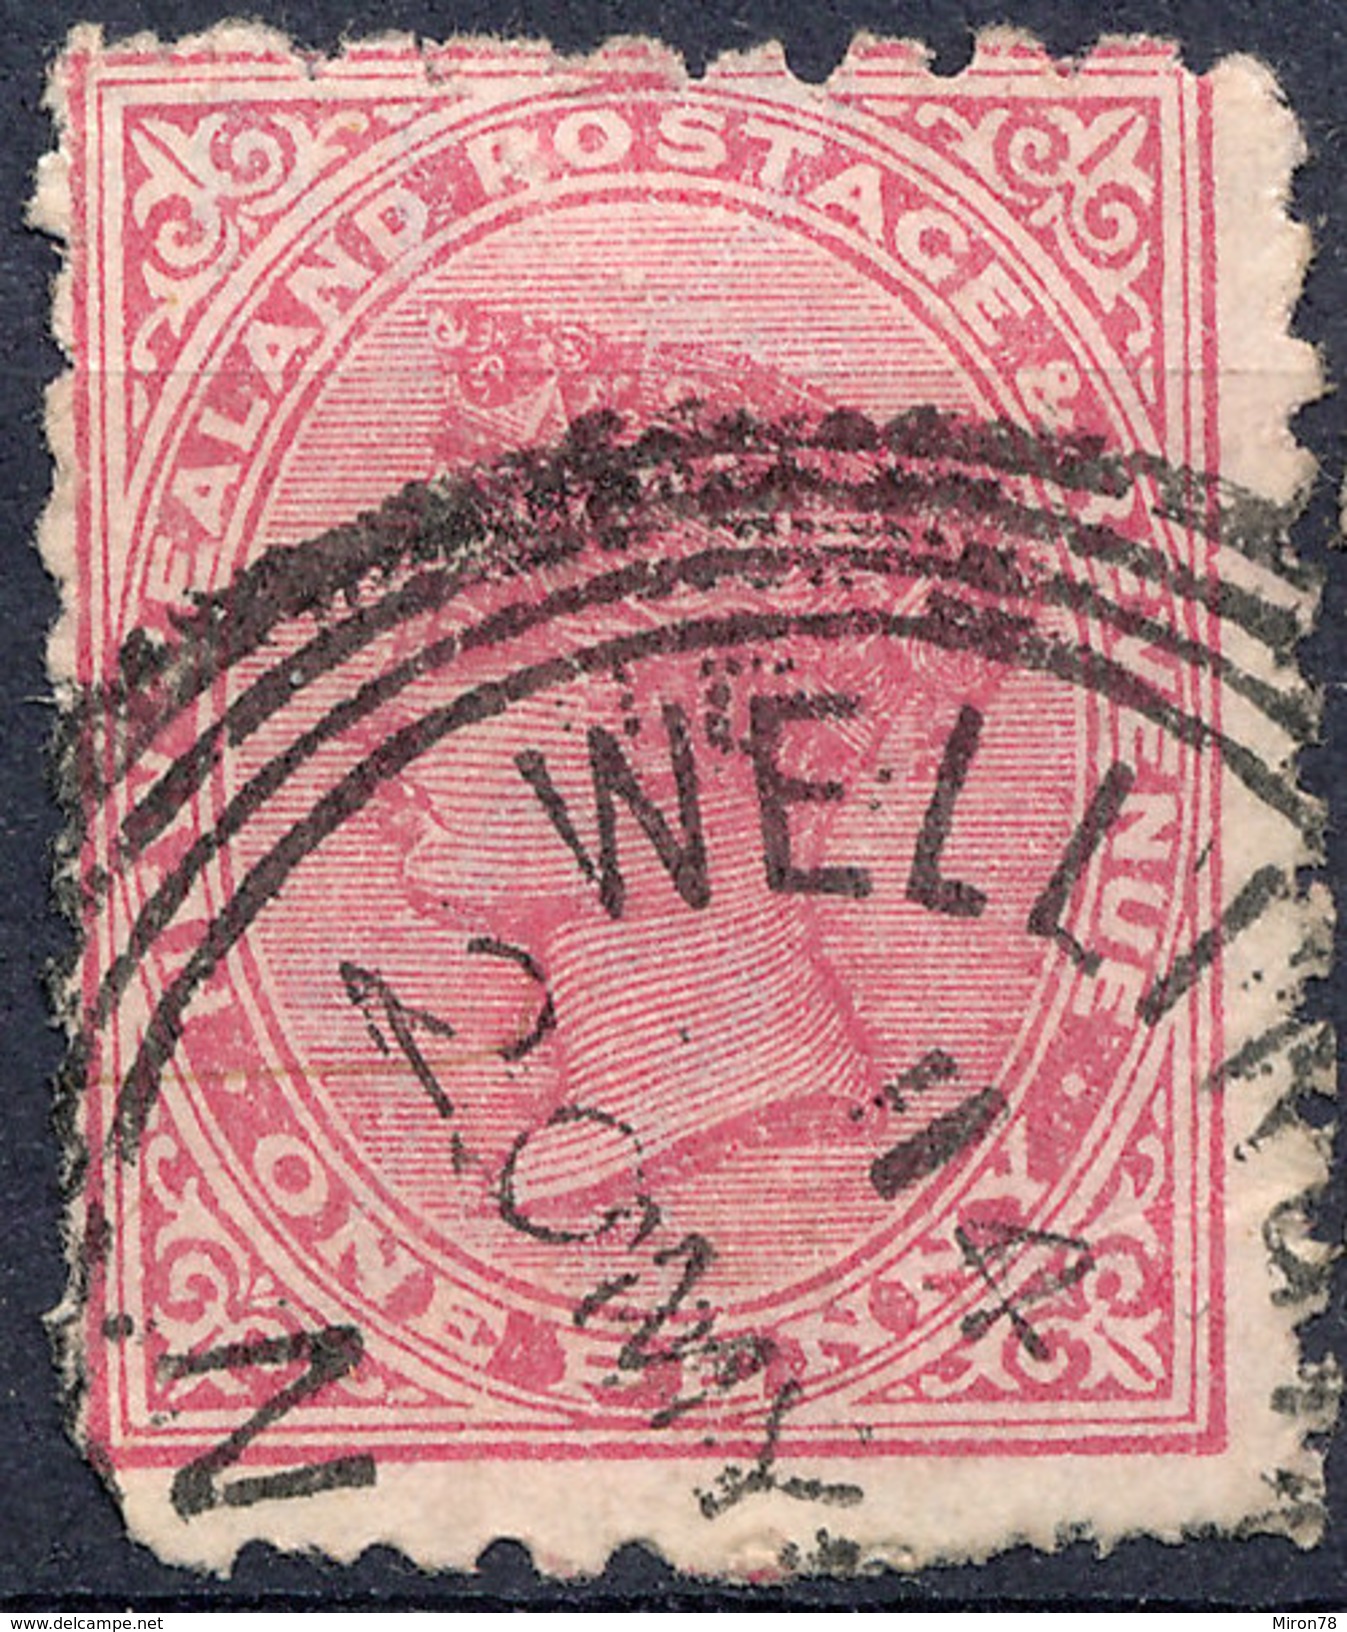 Stamp   Used Lot#28 - ...-1855 Préphilatélie